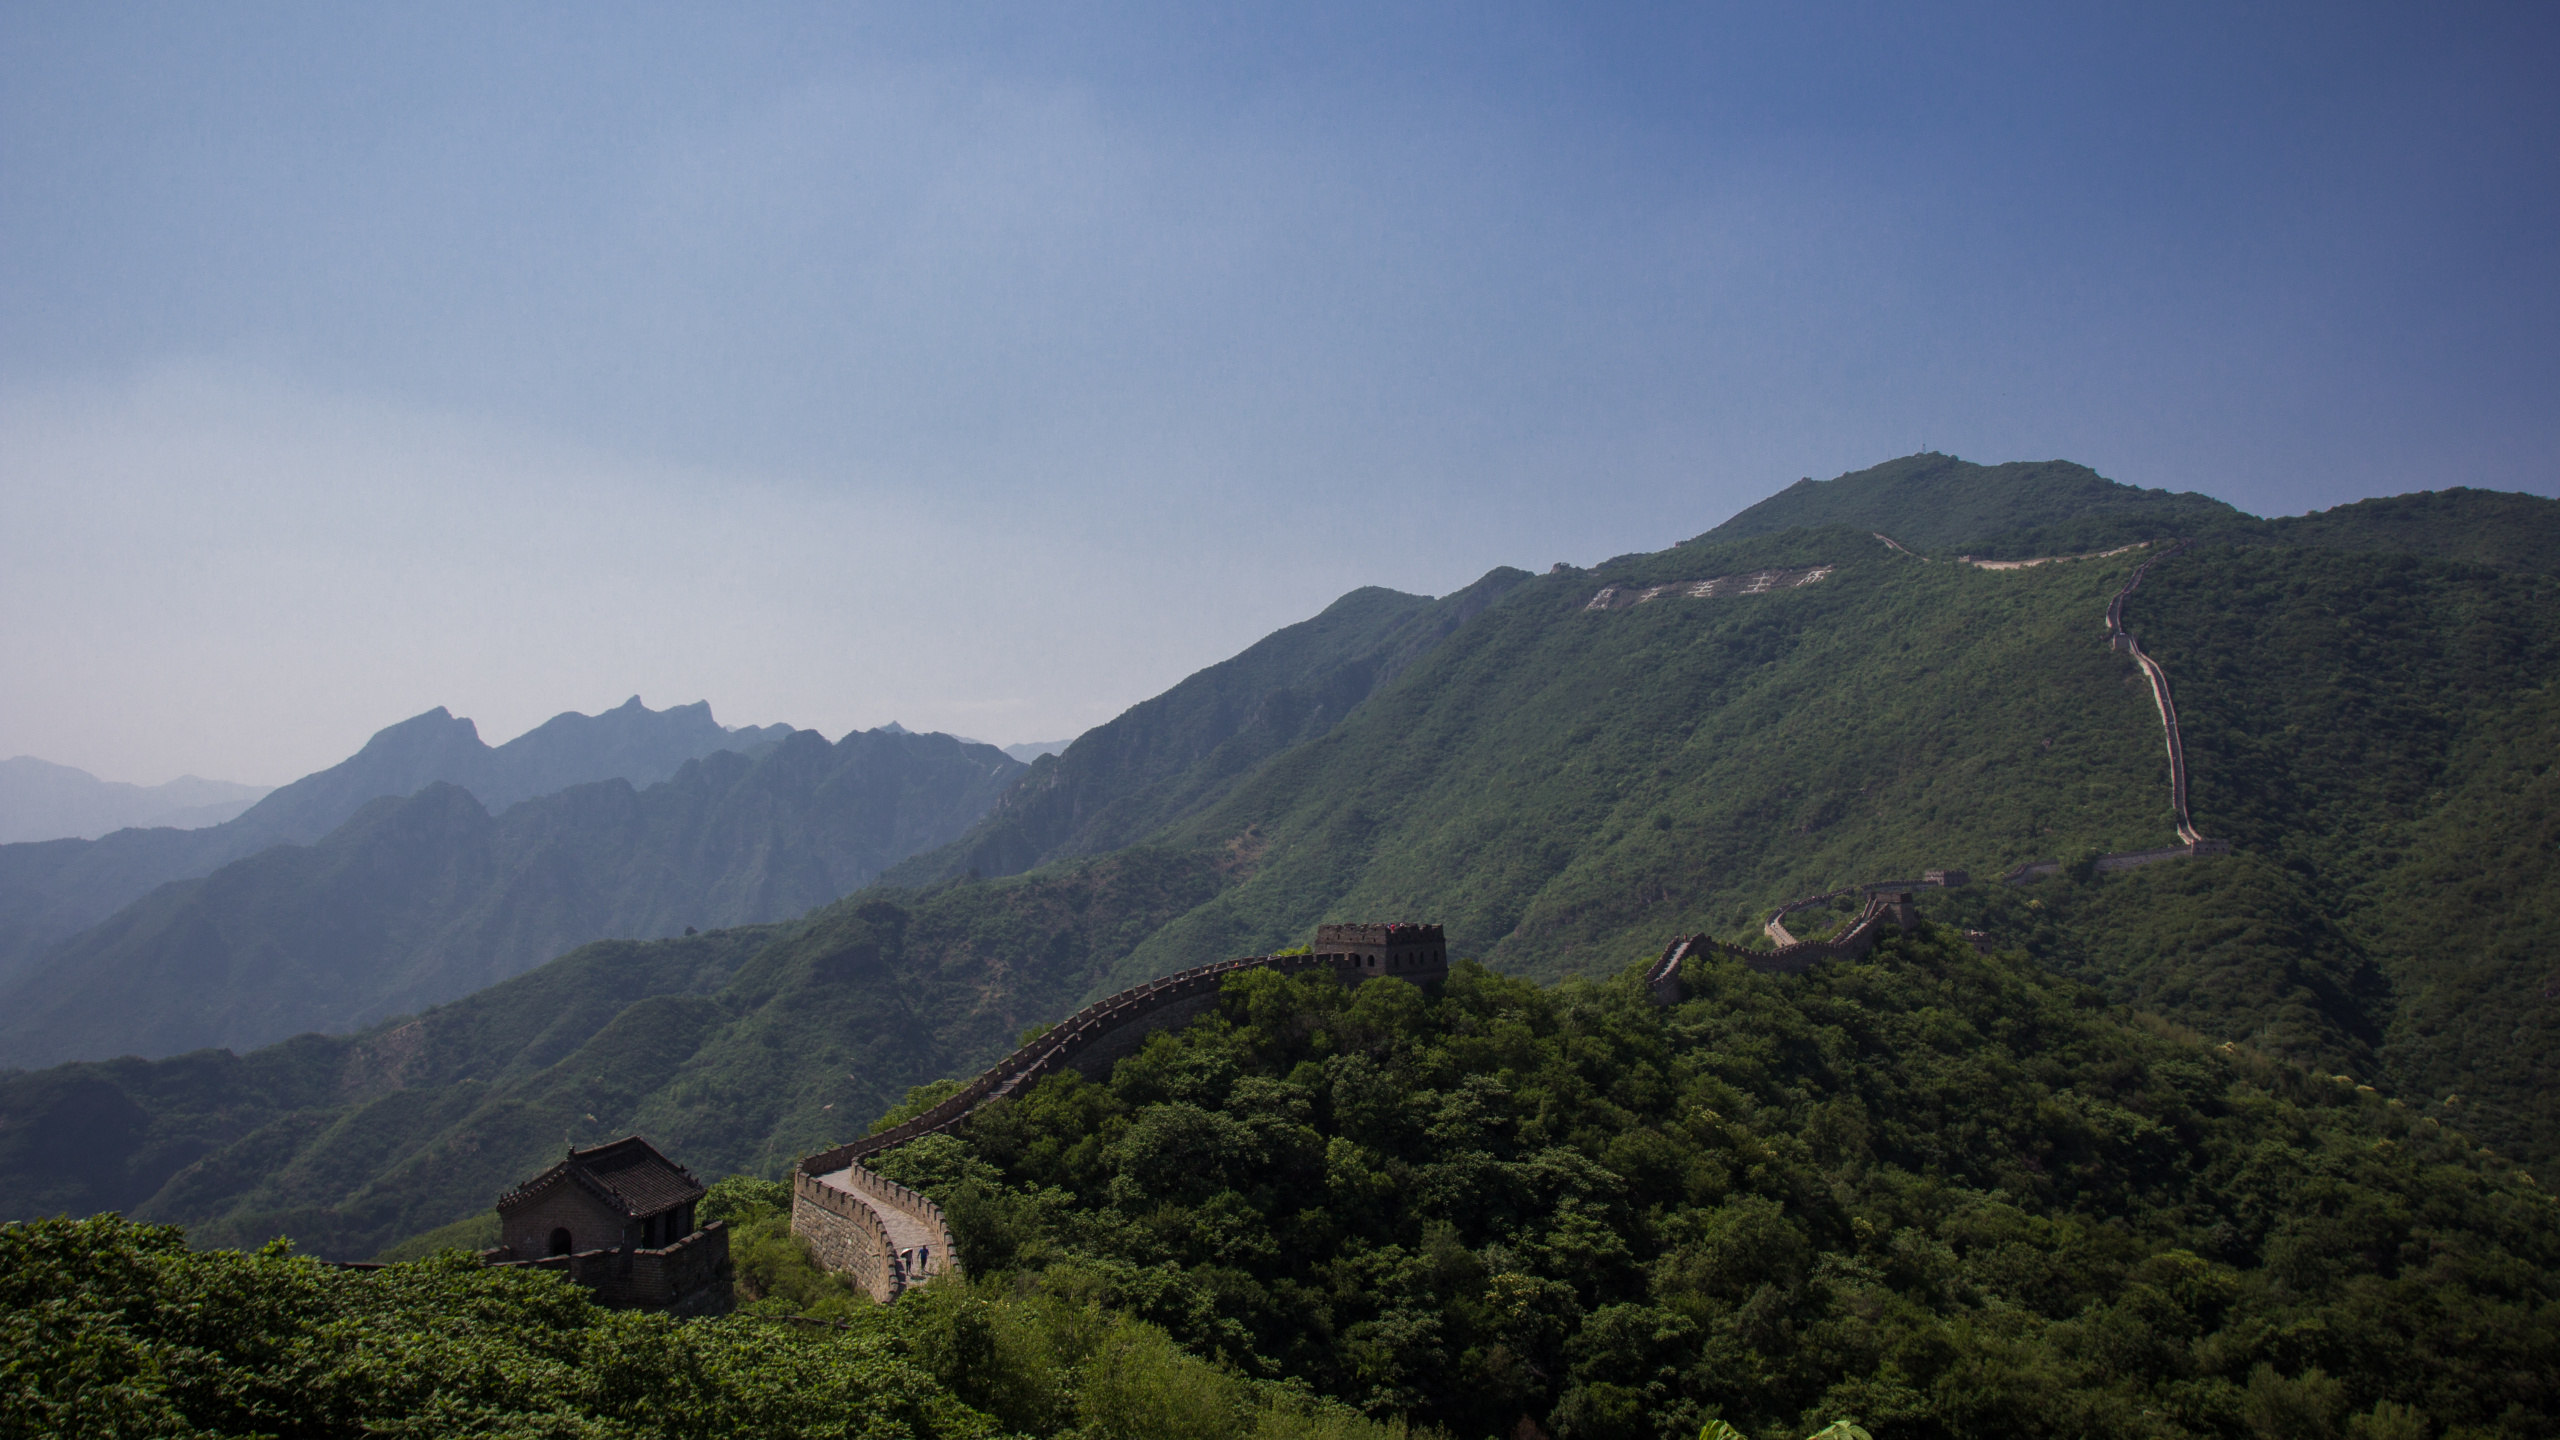 中国的长城, 多山的地貌, 山站, 高地, 植被 壁纸 2560x1440 允许